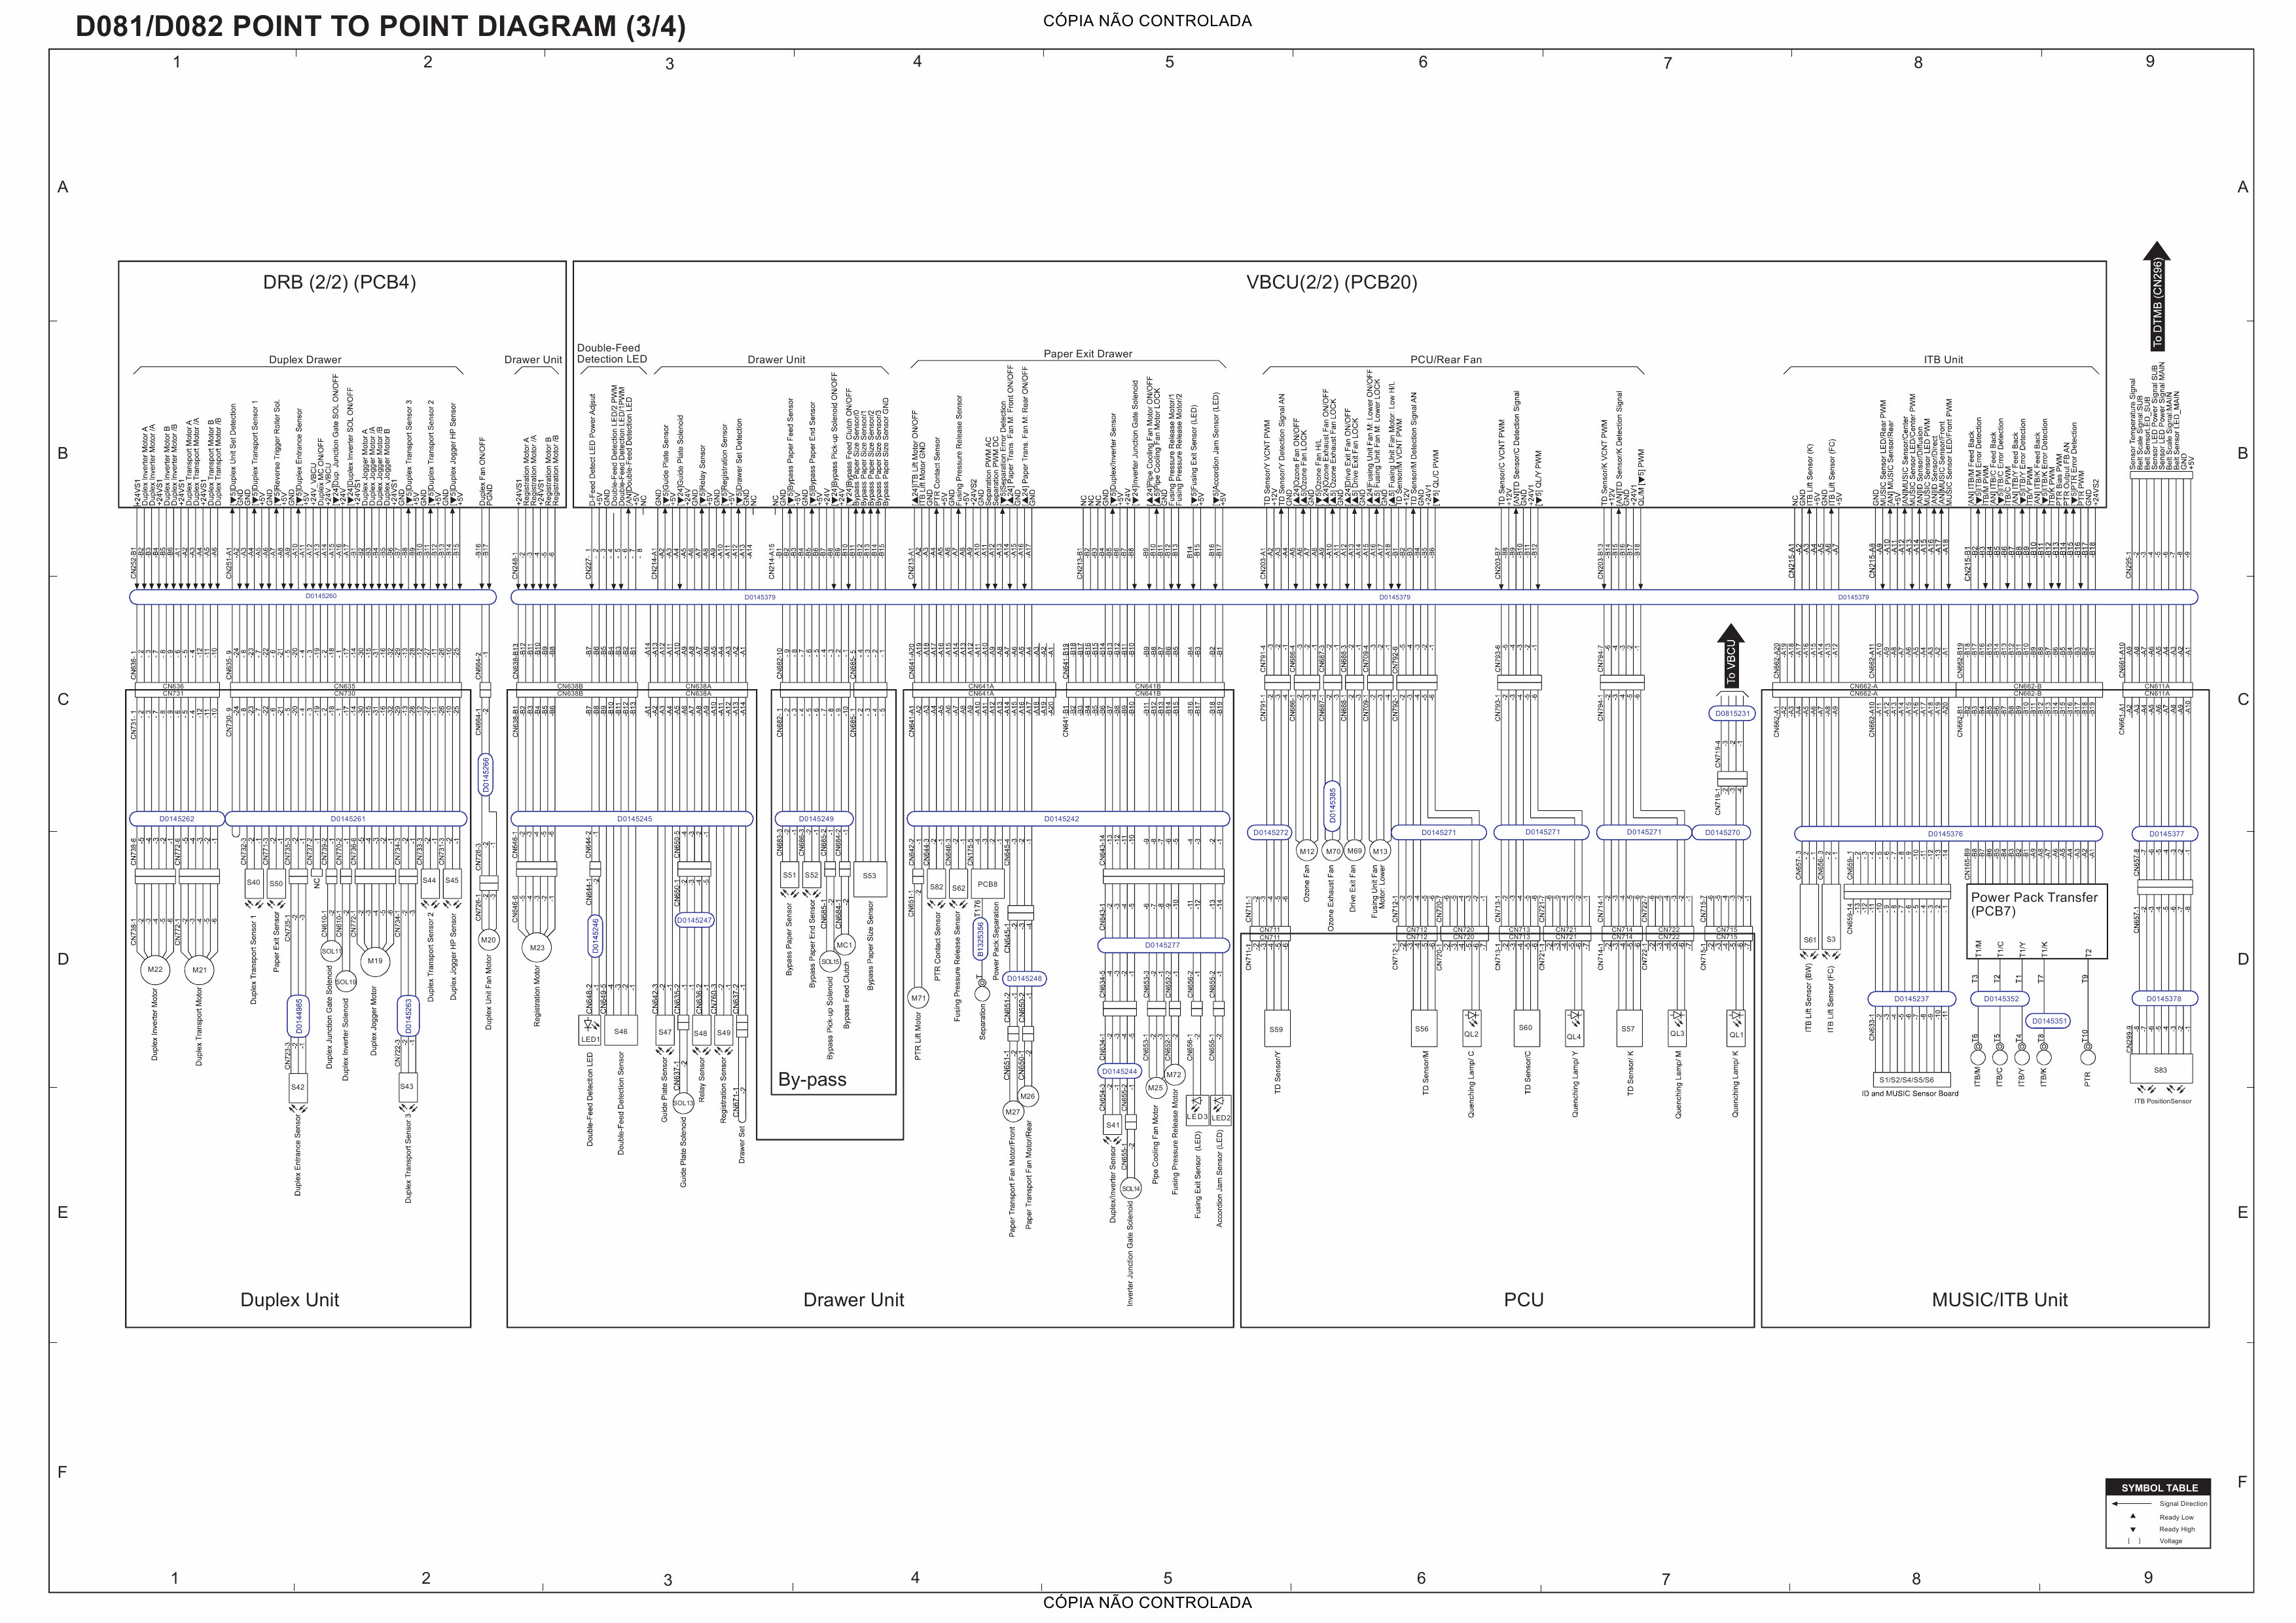 RICOH Aficio MP-C6501SP C7501SP D081 D082 Circuit Diagram-3